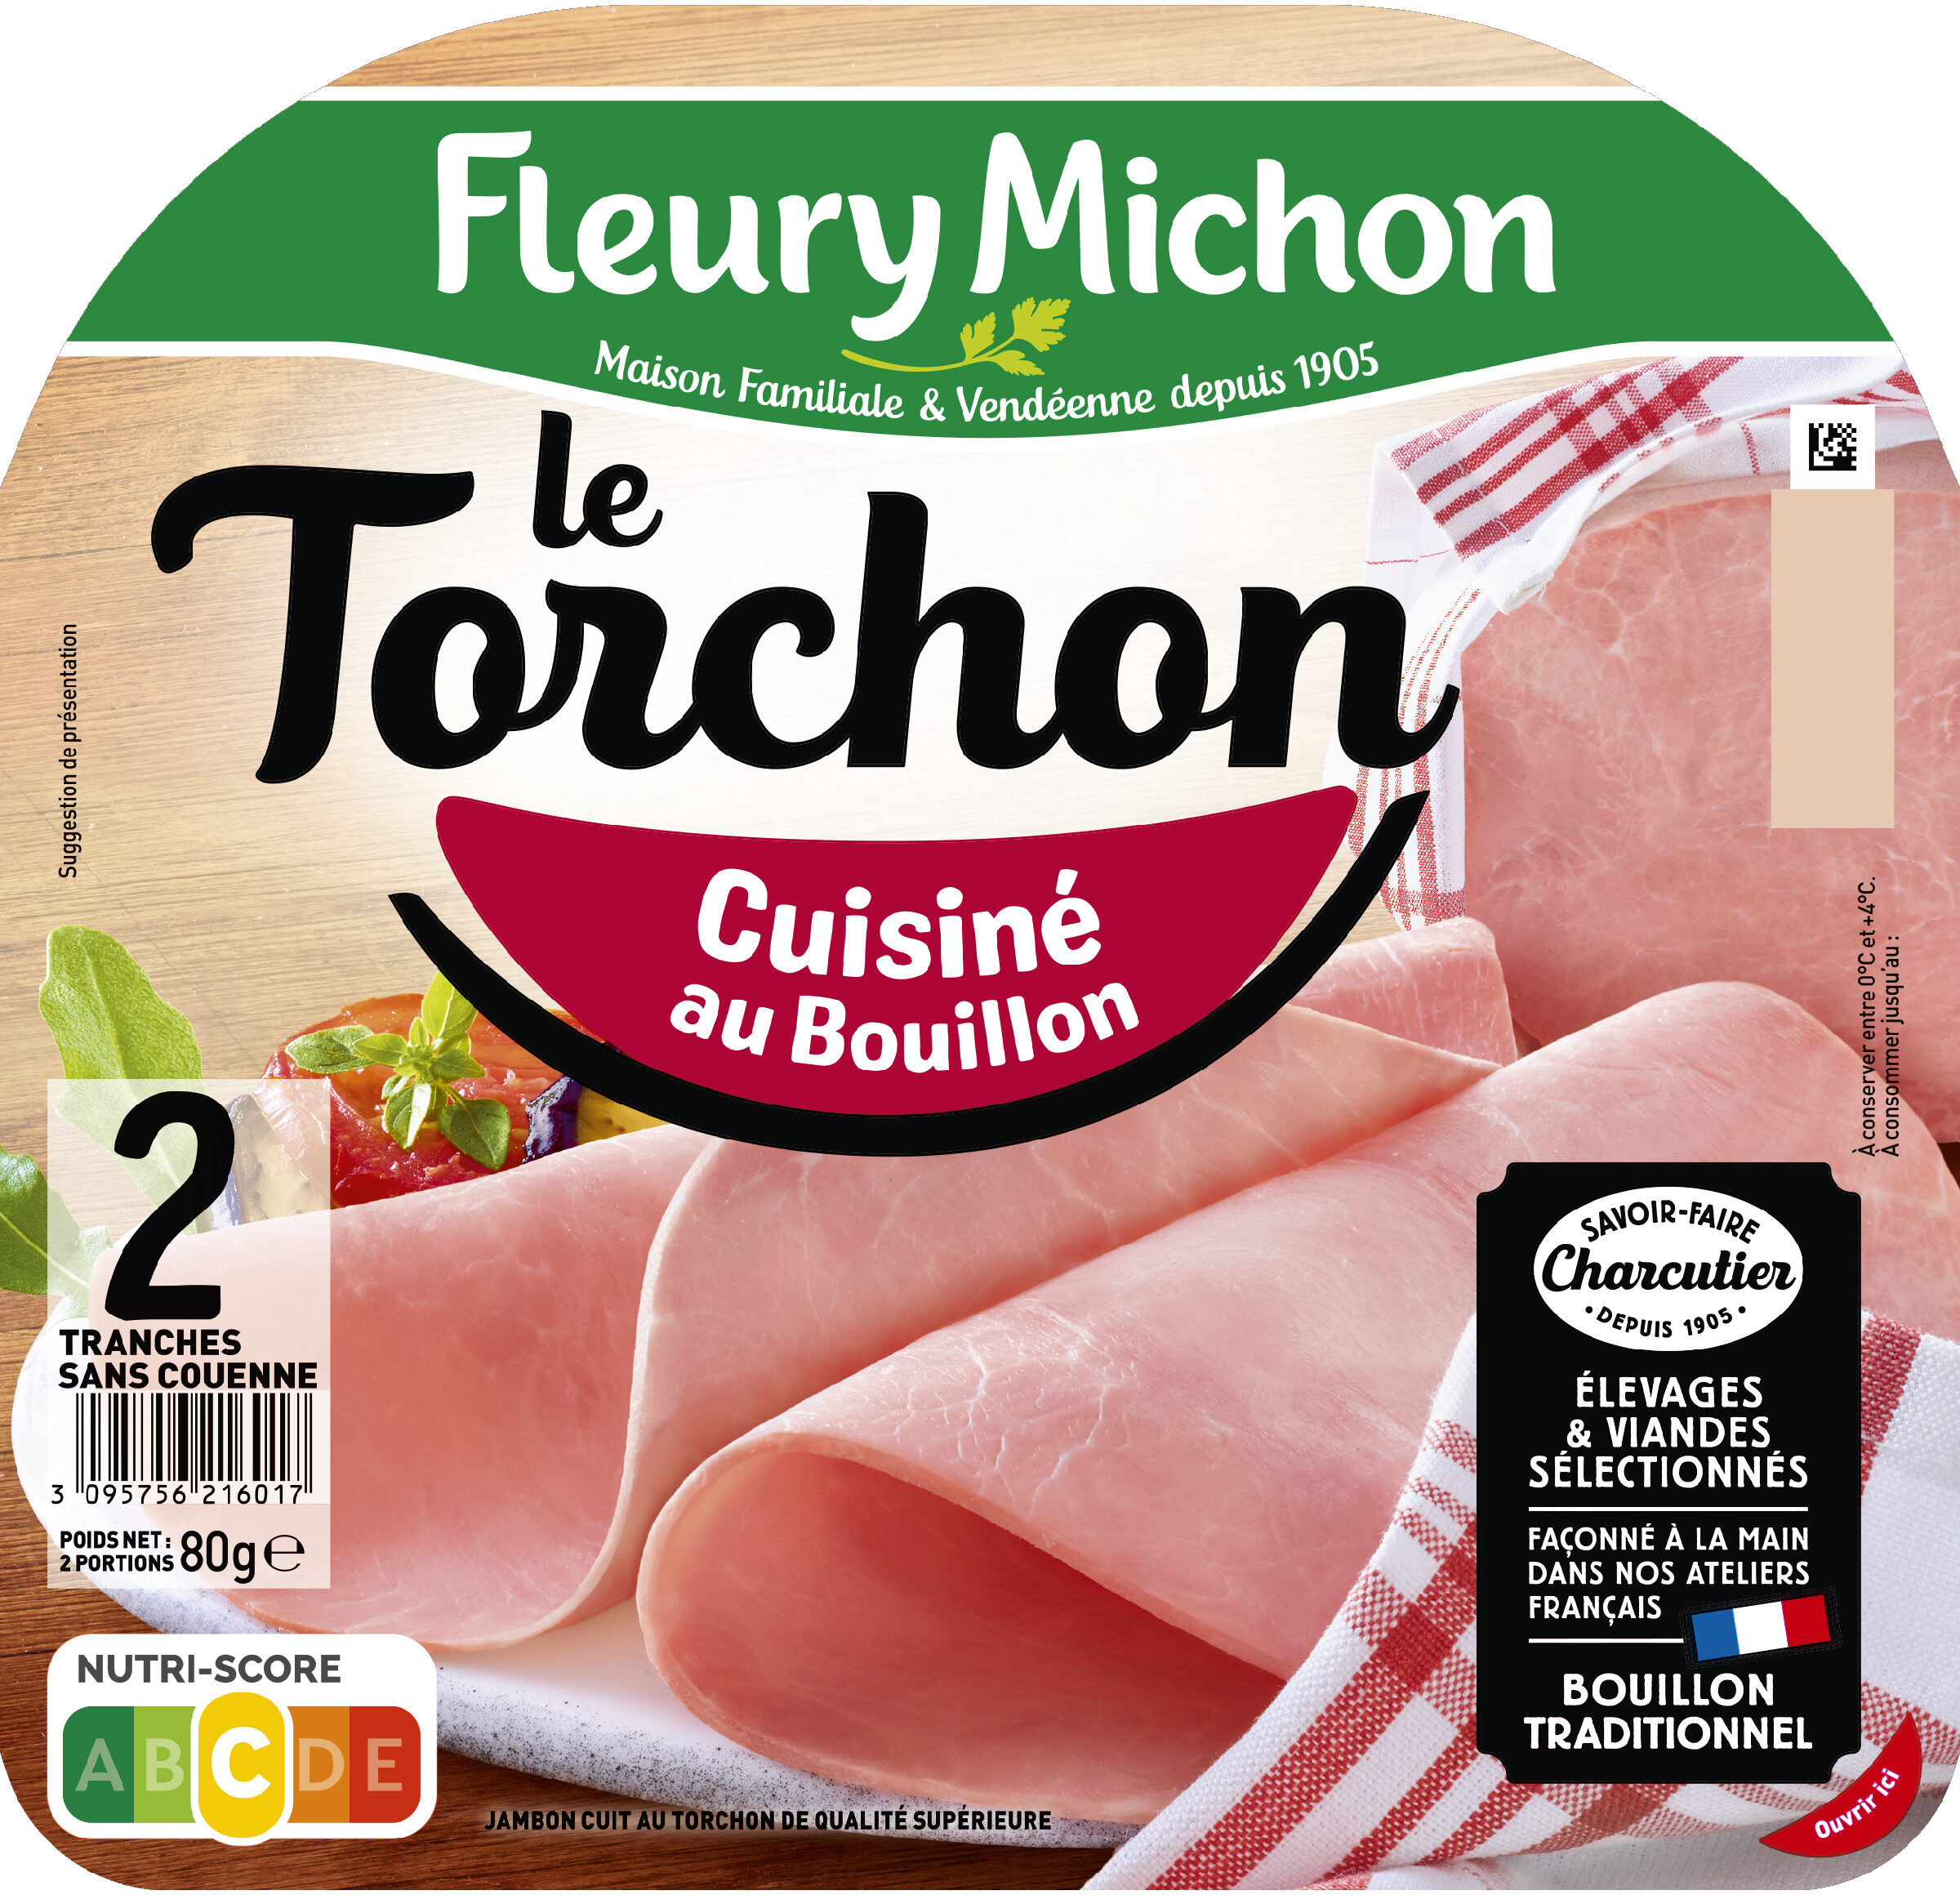 Le Torchon - Cuisiné au Bouillon - Product - fr